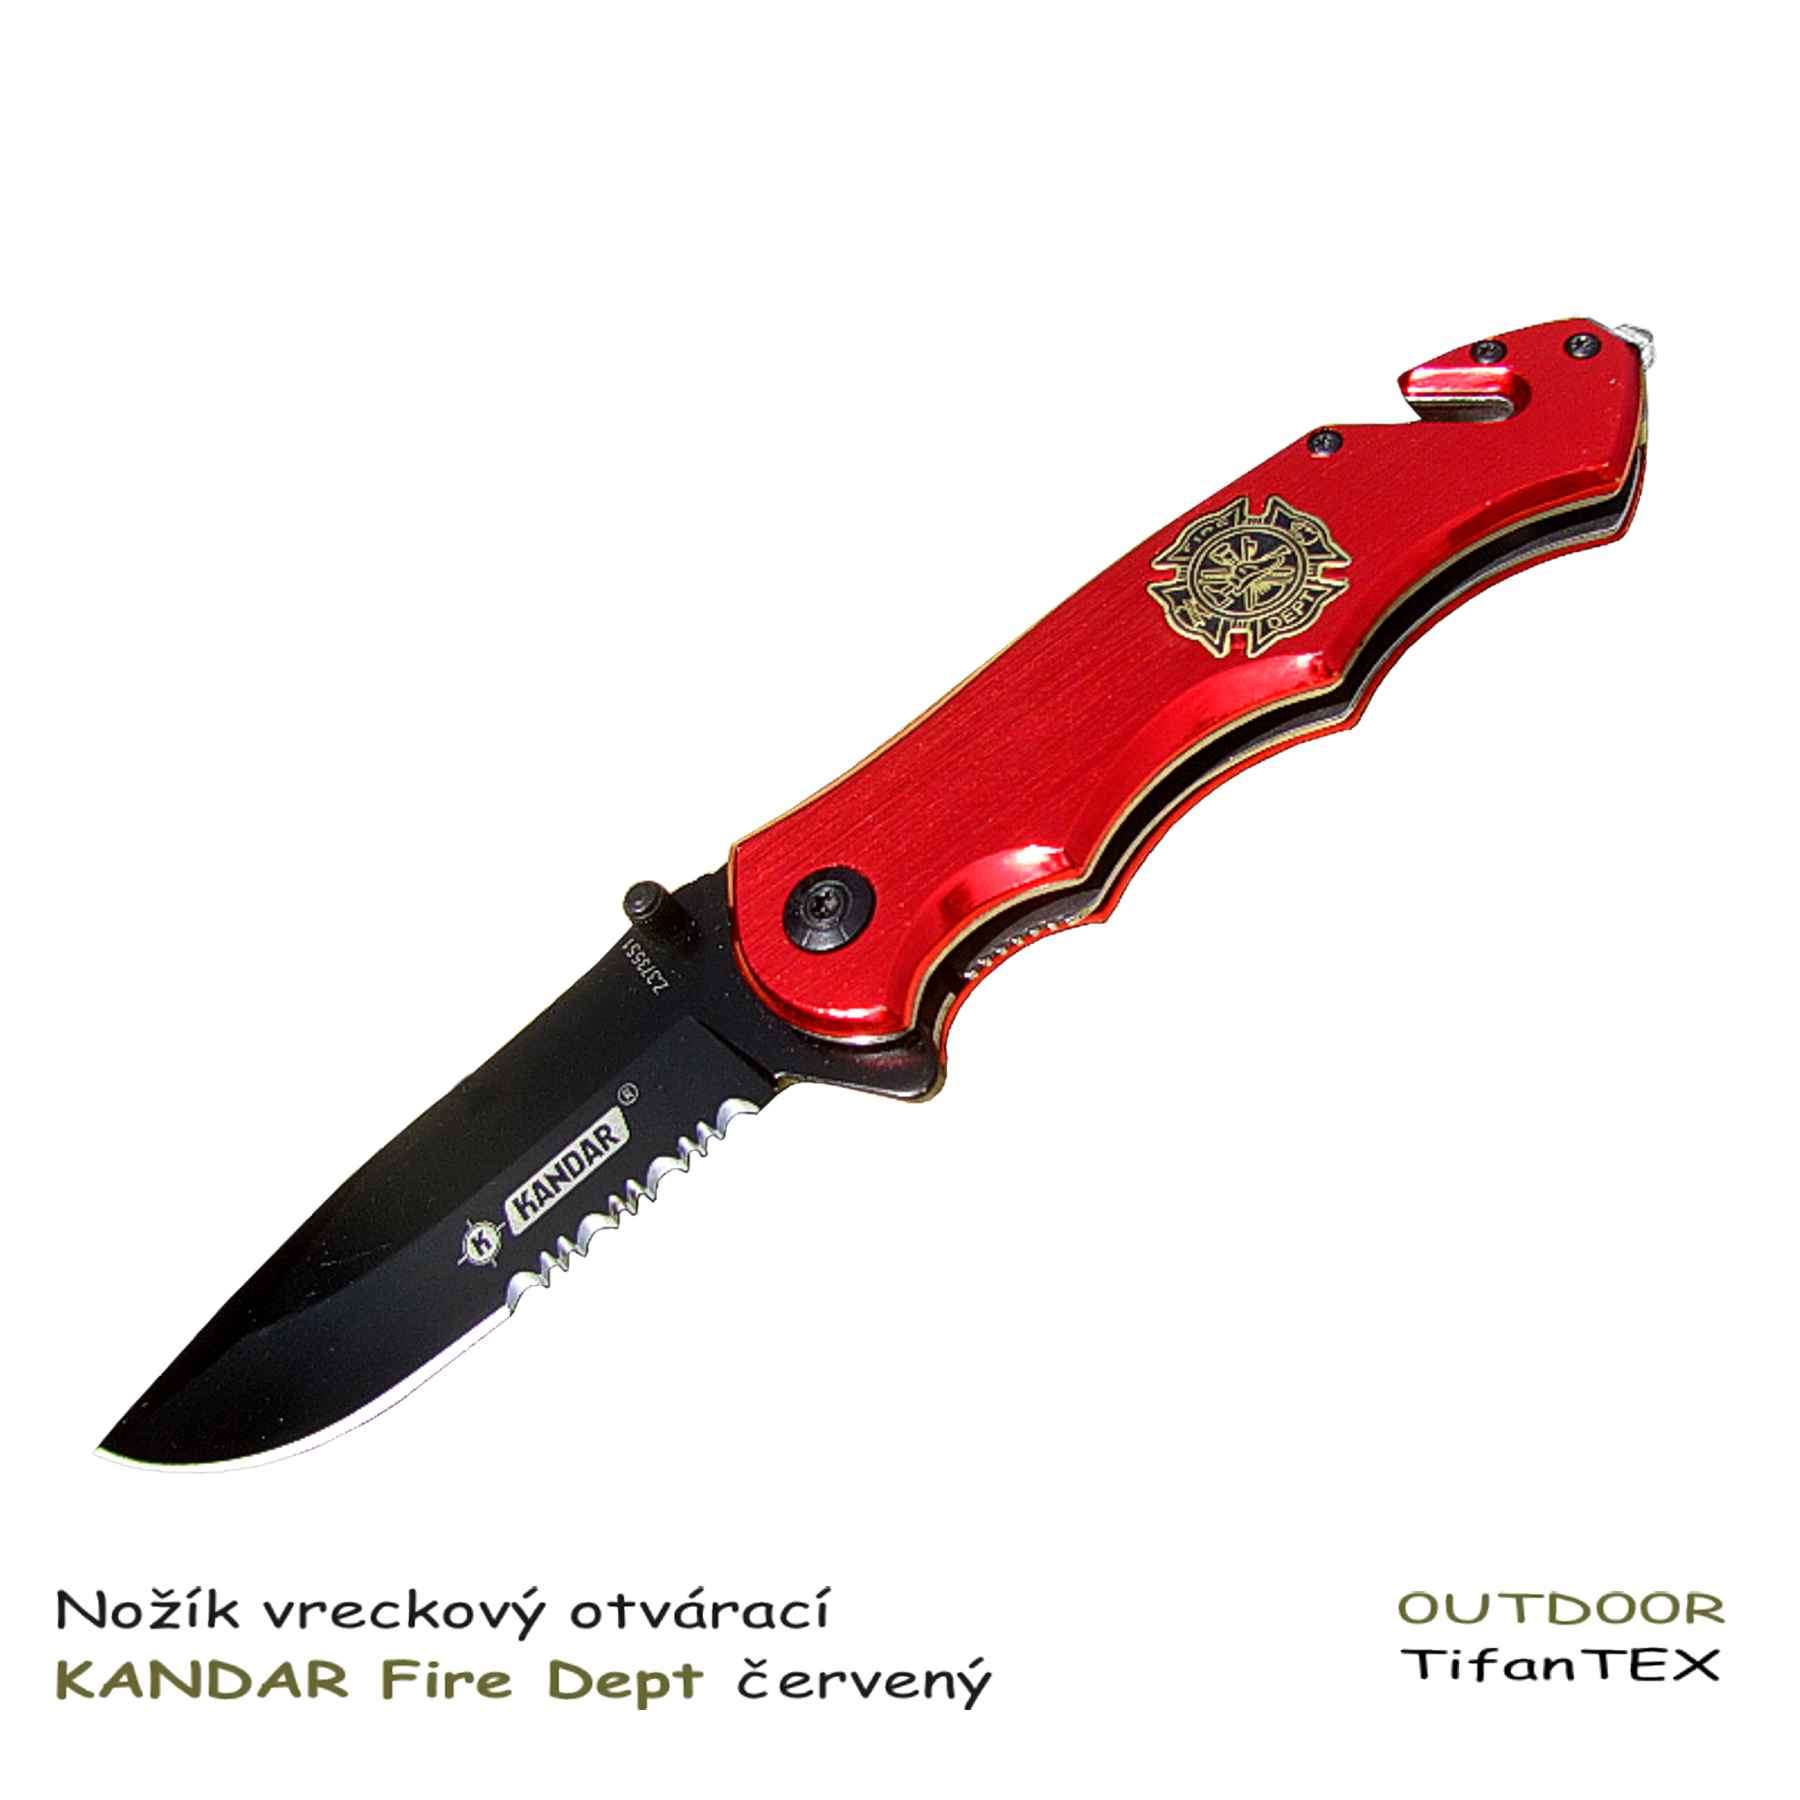 Nožík vreckový otvárací KANDAR Fire Dept červený - Tifantex nože veľkosklad